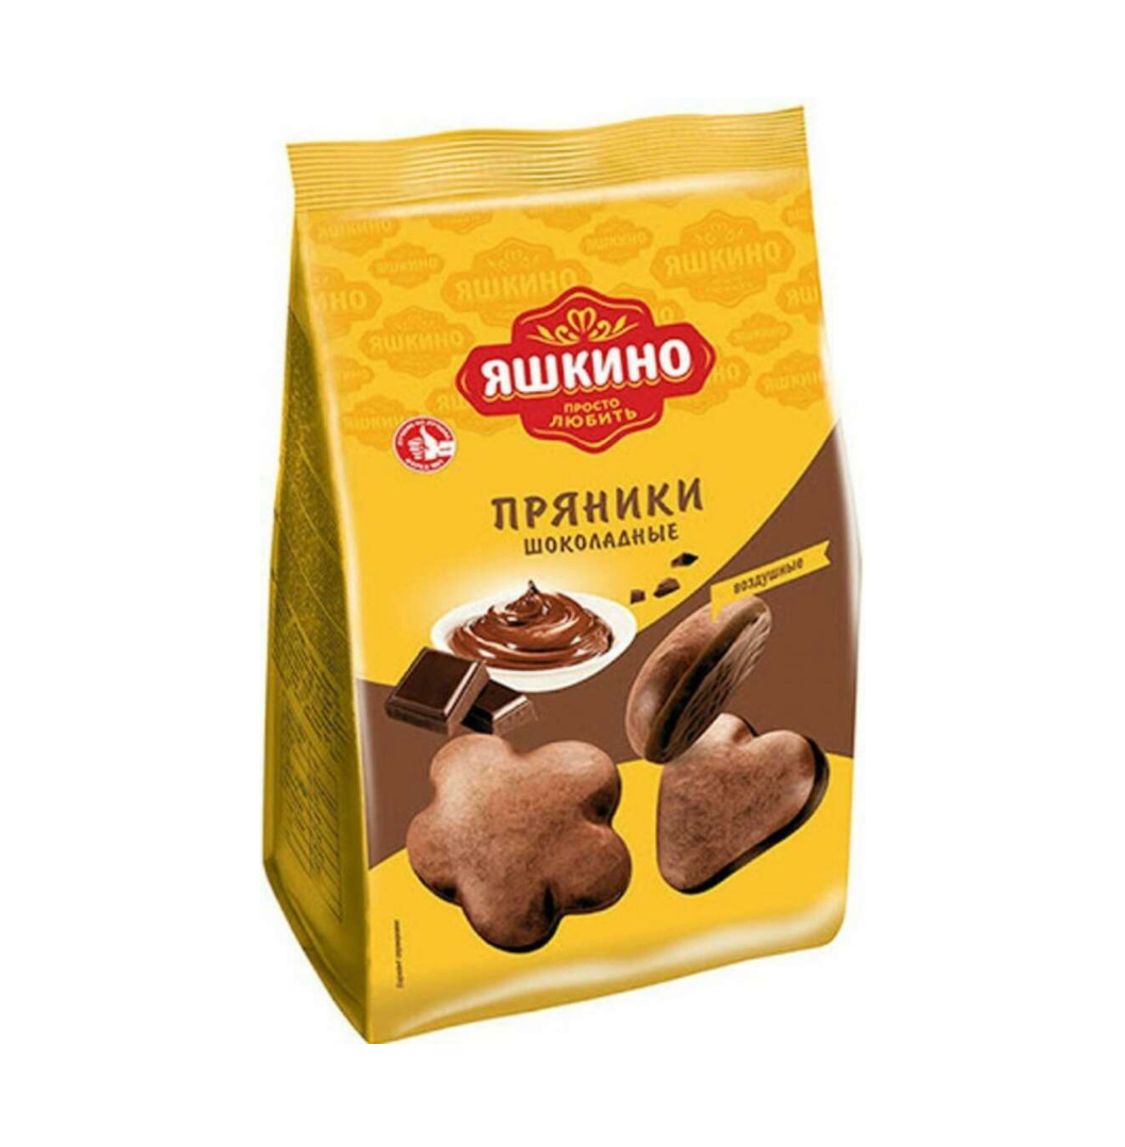 Пряники шоколадные Яшкино 350g